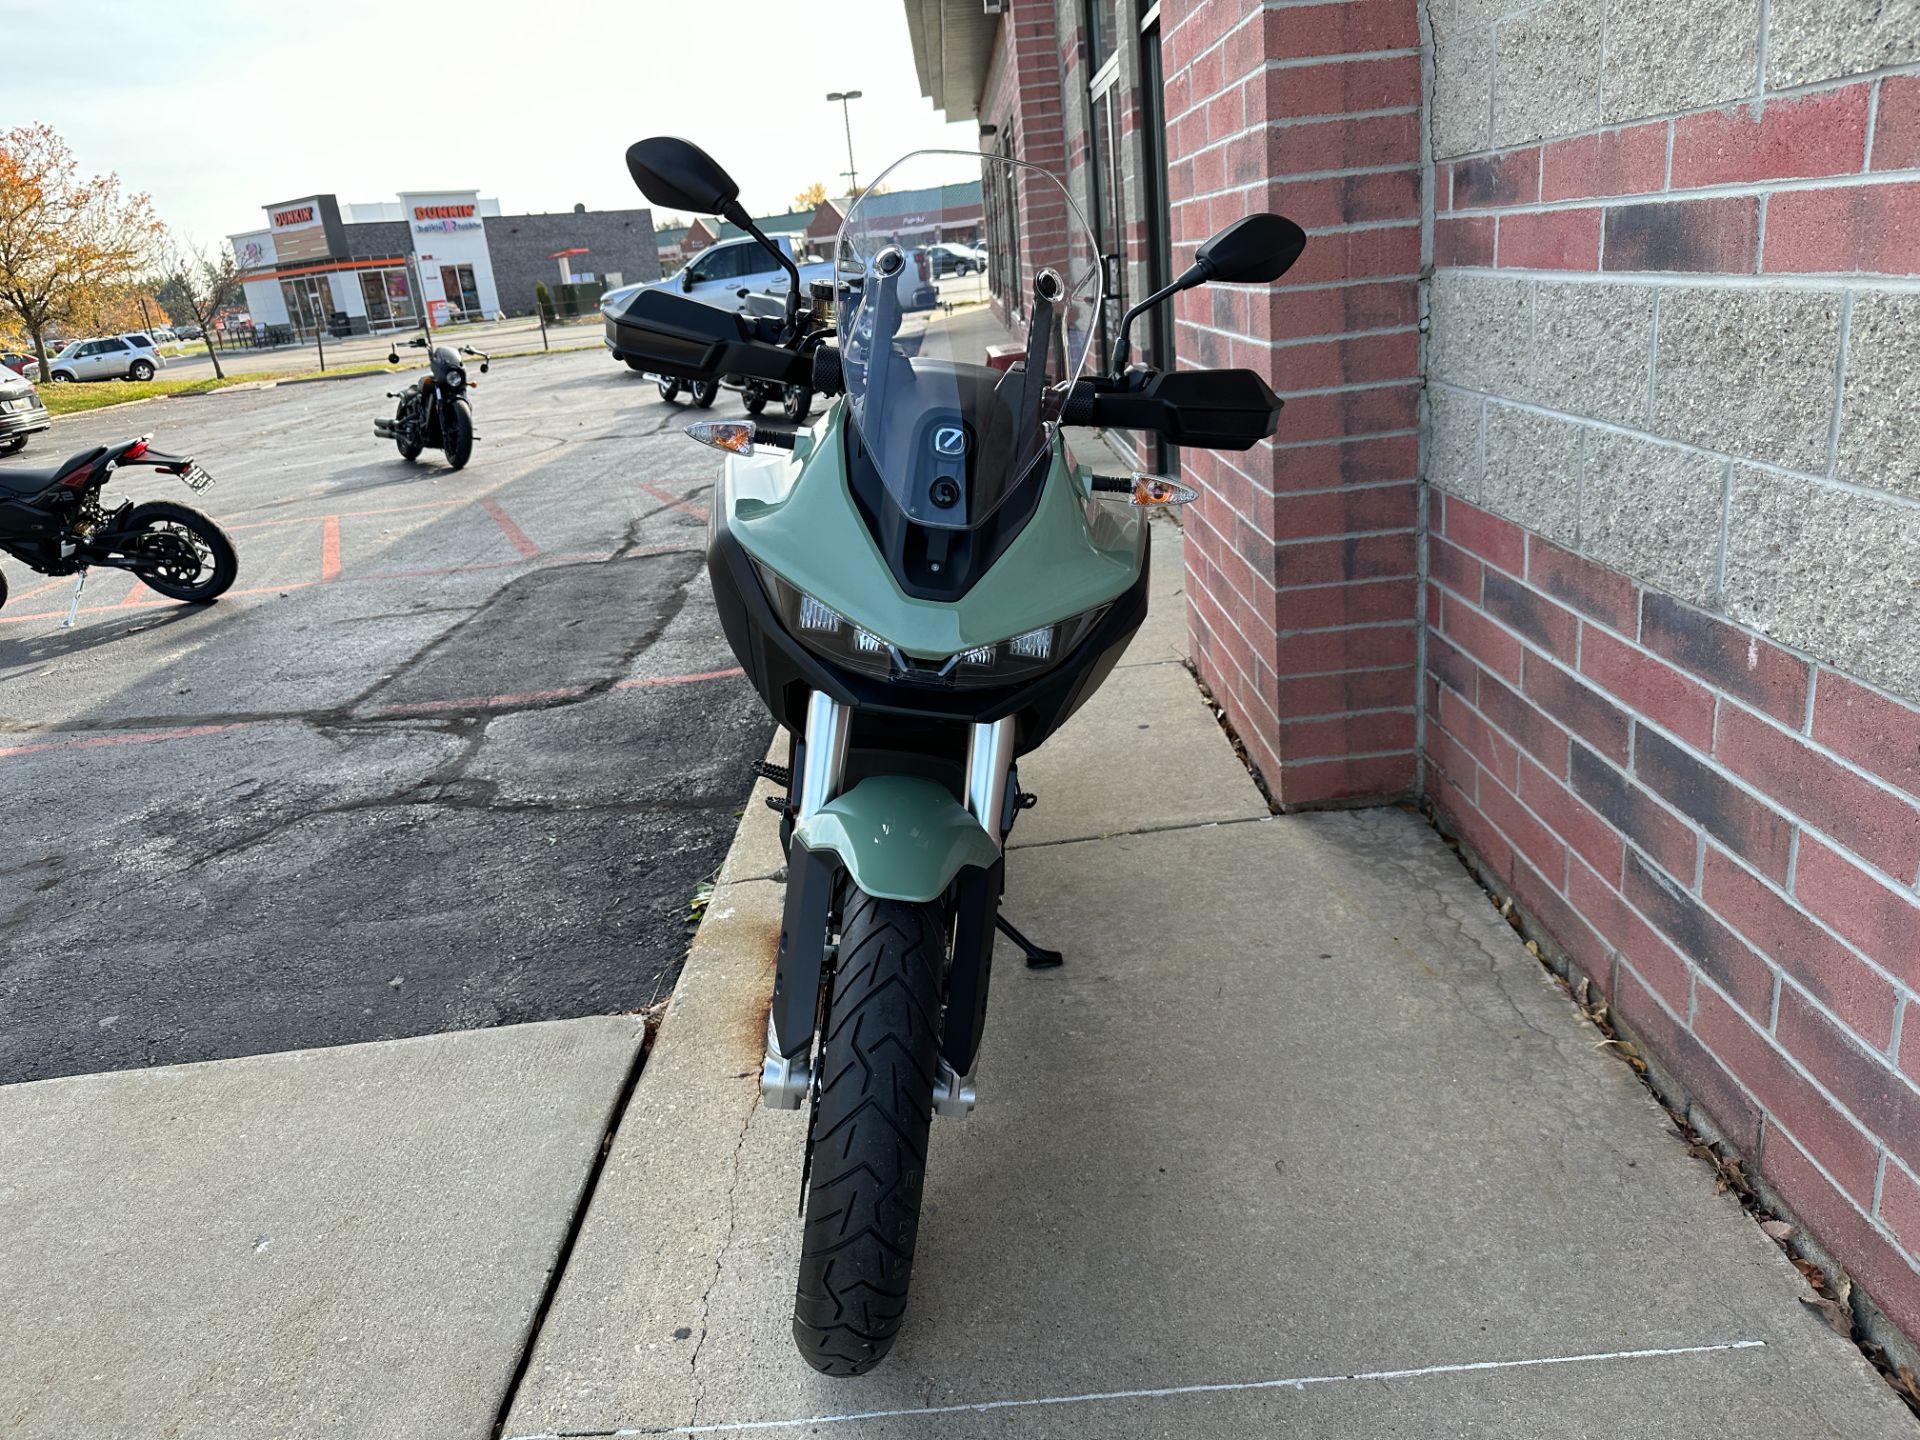 2023 Zero Motorcycles DSR/X in Muskego, Wisconsin - Photo 3